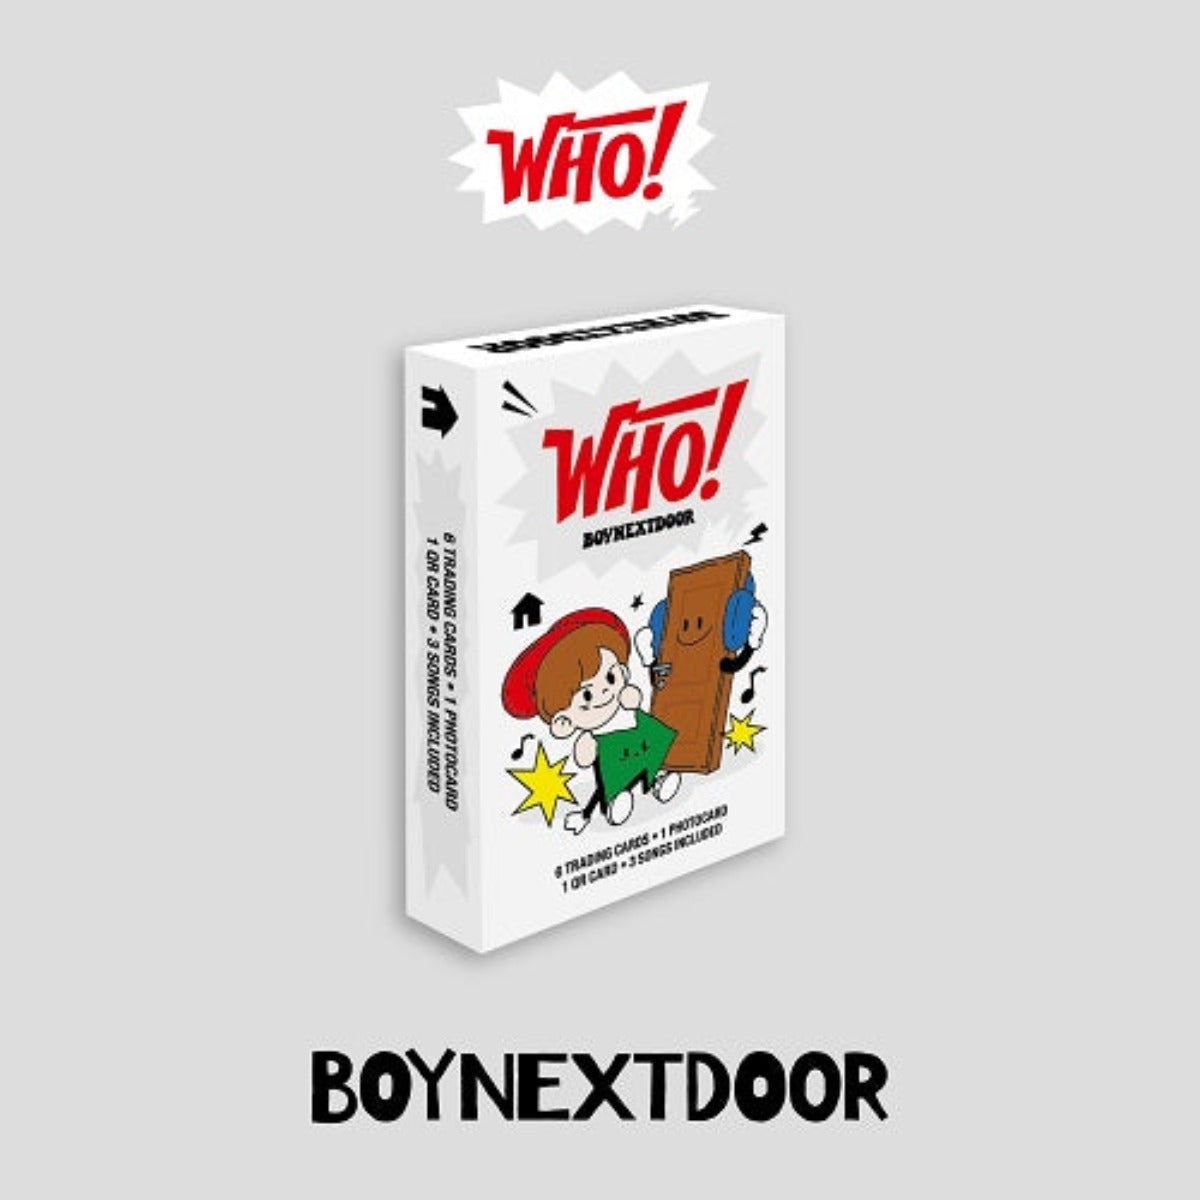 BOYNEXTDOOR Single Album Vol. 1 - WHO! (Weverse Albums Version)